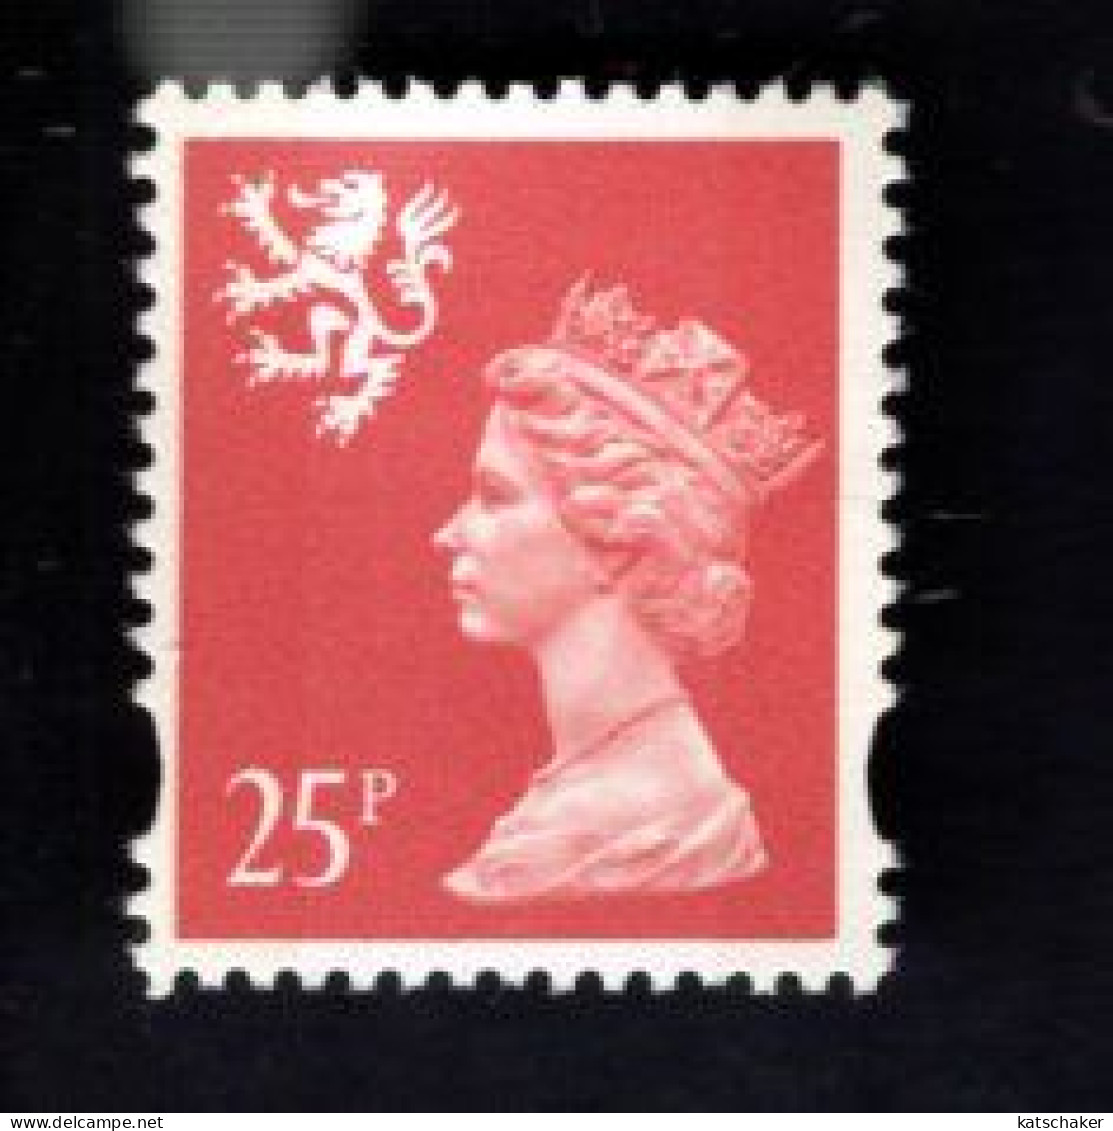 1787054533 1996  SCOTT SMH65  GIBBONS S84 (XX) POSTFRIS MINT NEVER HINGED   - QUEEN ELIZABETH II - - Schottland